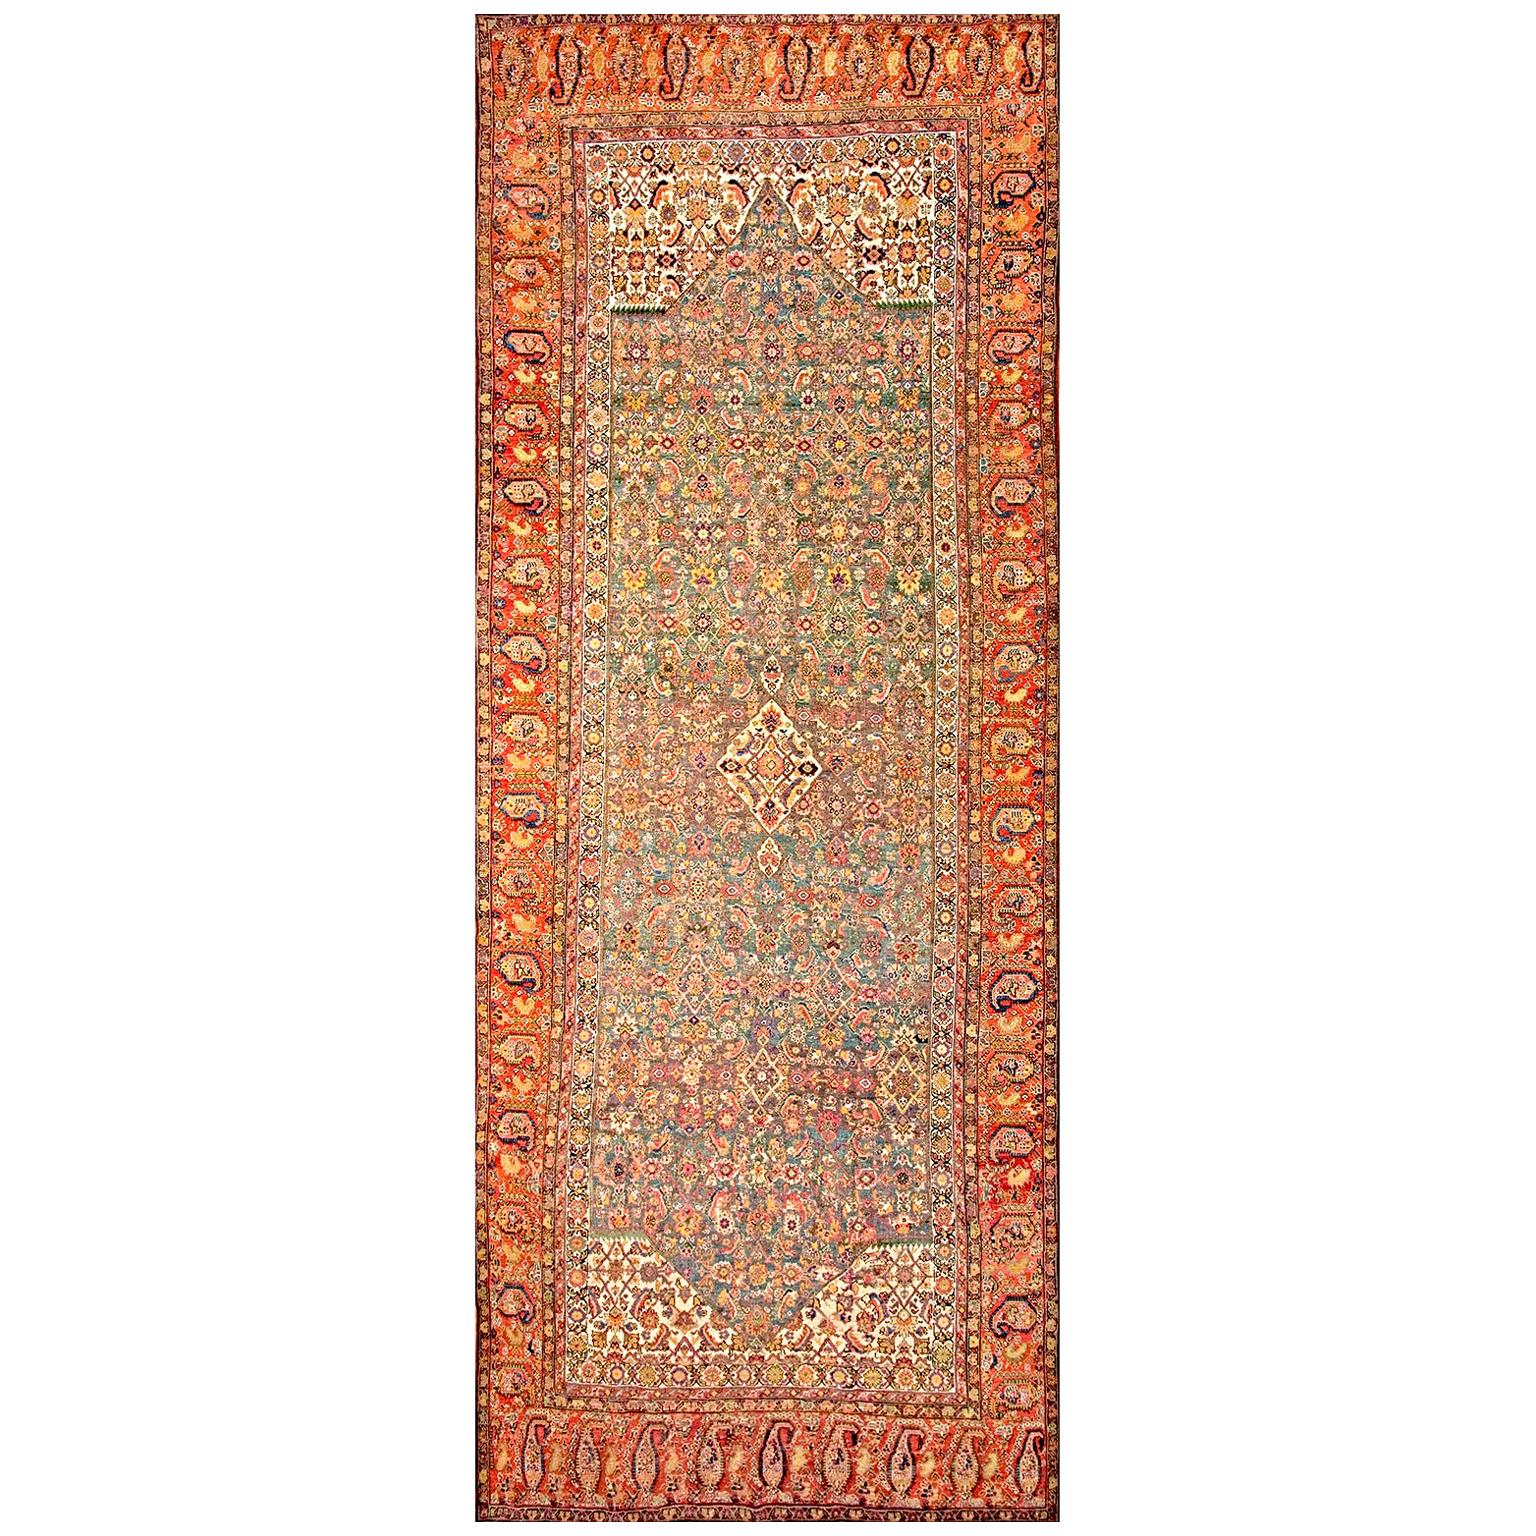 Anfang des 19. Jahrhunderts N.W. Persischer Galerieteppich ( 6'10" x 17' - 208 x 518)